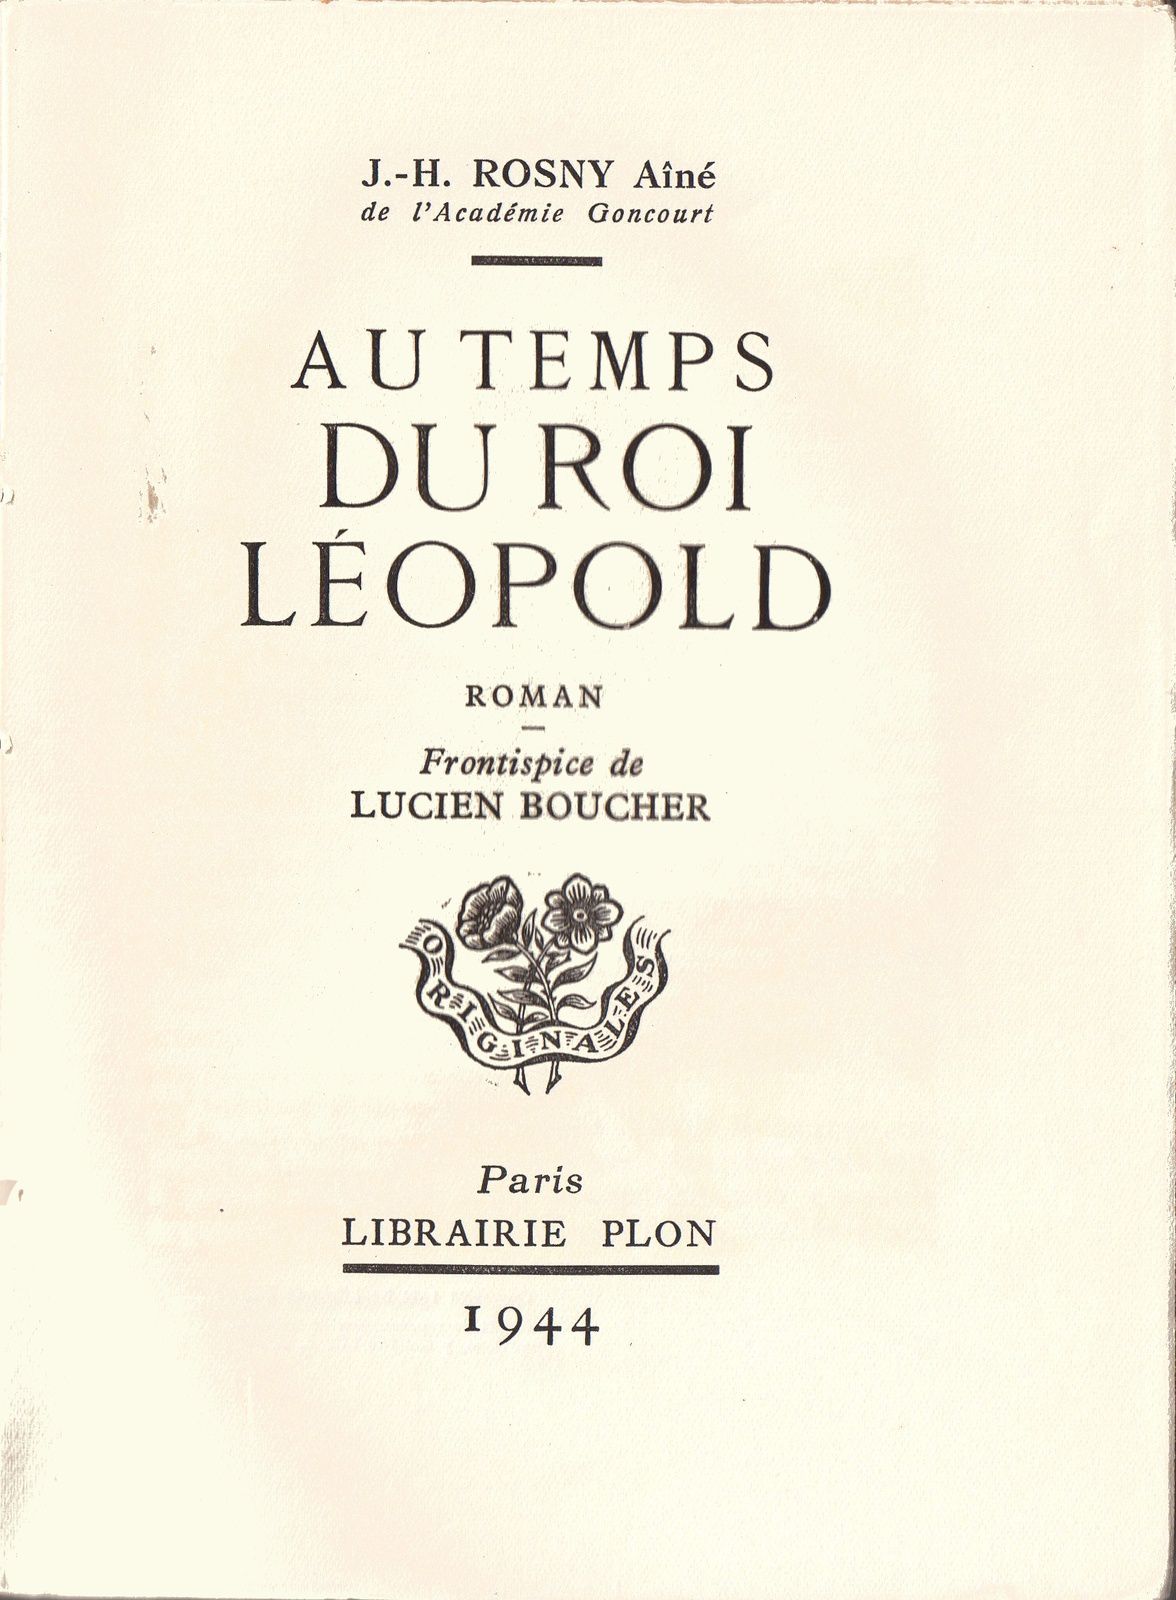 J.-H. Rosny aîné "Au temps du roi Léopold" (Plon - 1944) [1100 exemplaires]